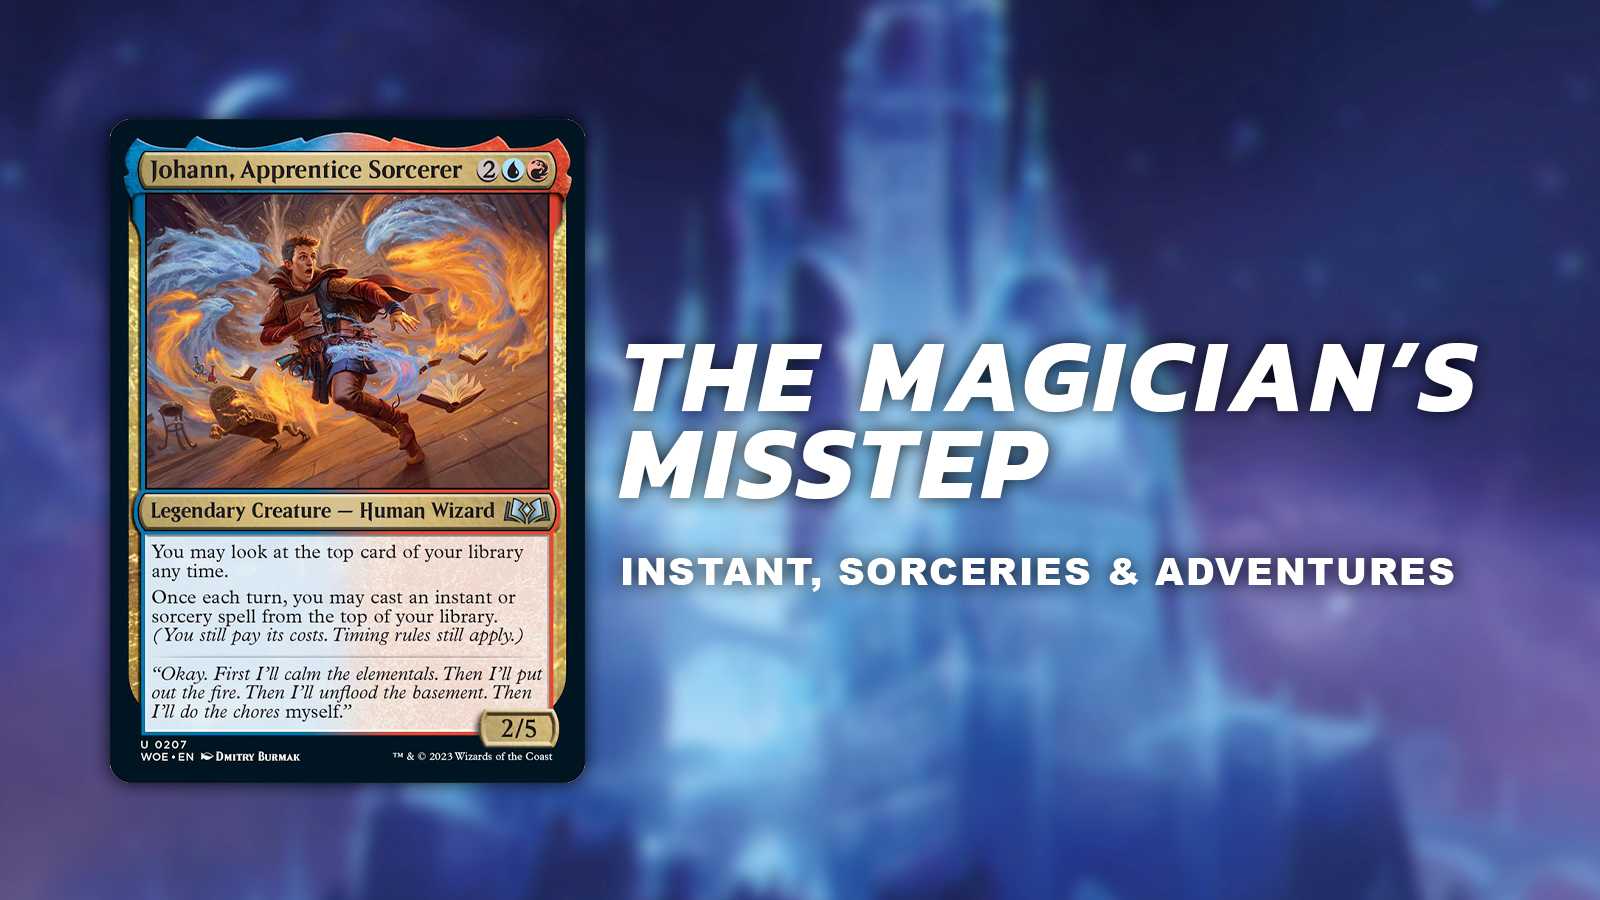 The Magician's misstep (instants, socereries & adventures)